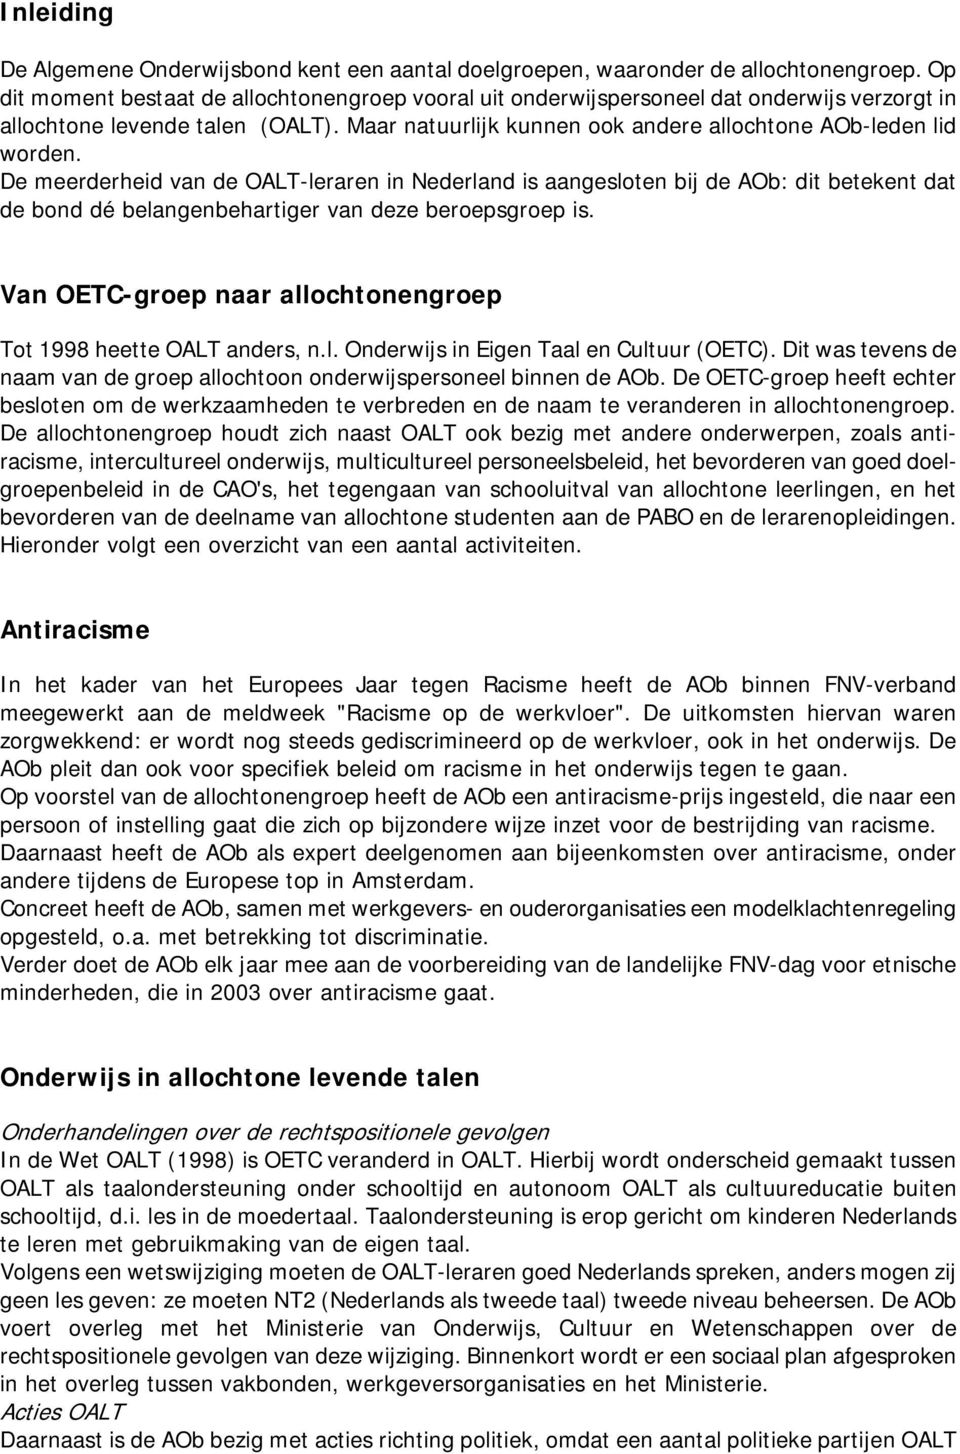 De meerderheid van de OALT-leraren in Nederland is aangesloten bij de AOb: dit betekent dat de bond dé belangenbehartiger van deze beroepsgroep is.